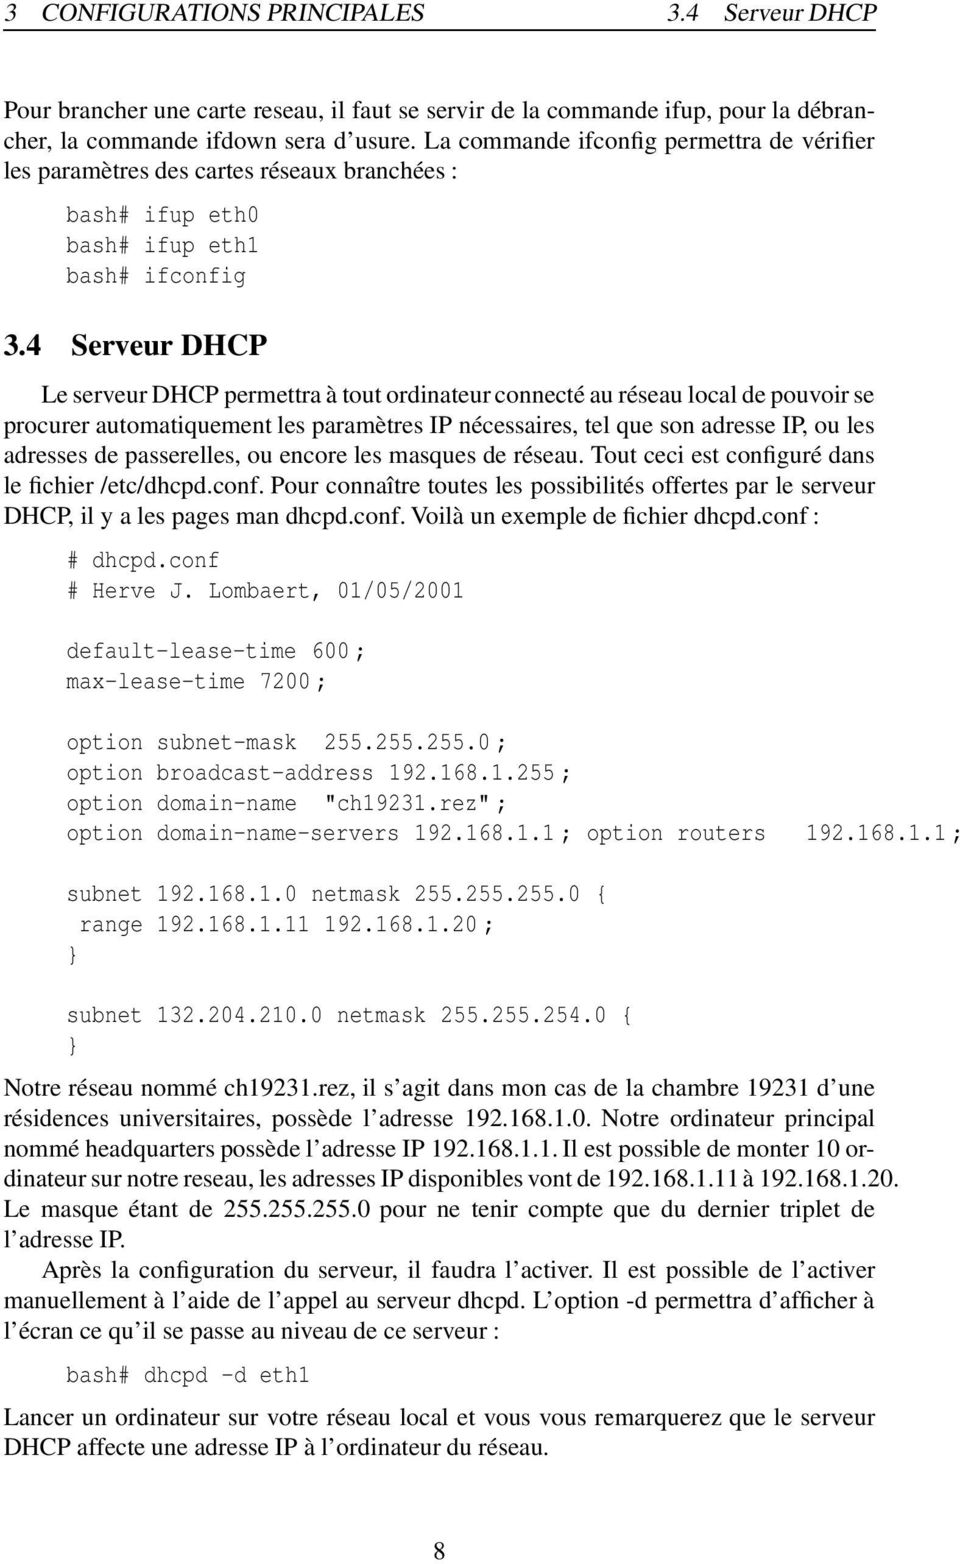 4 Serveur DHCP Le serveur DHCP permettra à tout ordinateur connecté au réseau local de pouvoir se procurer automatiquement les paramètres IP nécessaires, tel que son adresse IP, ou les adresses de